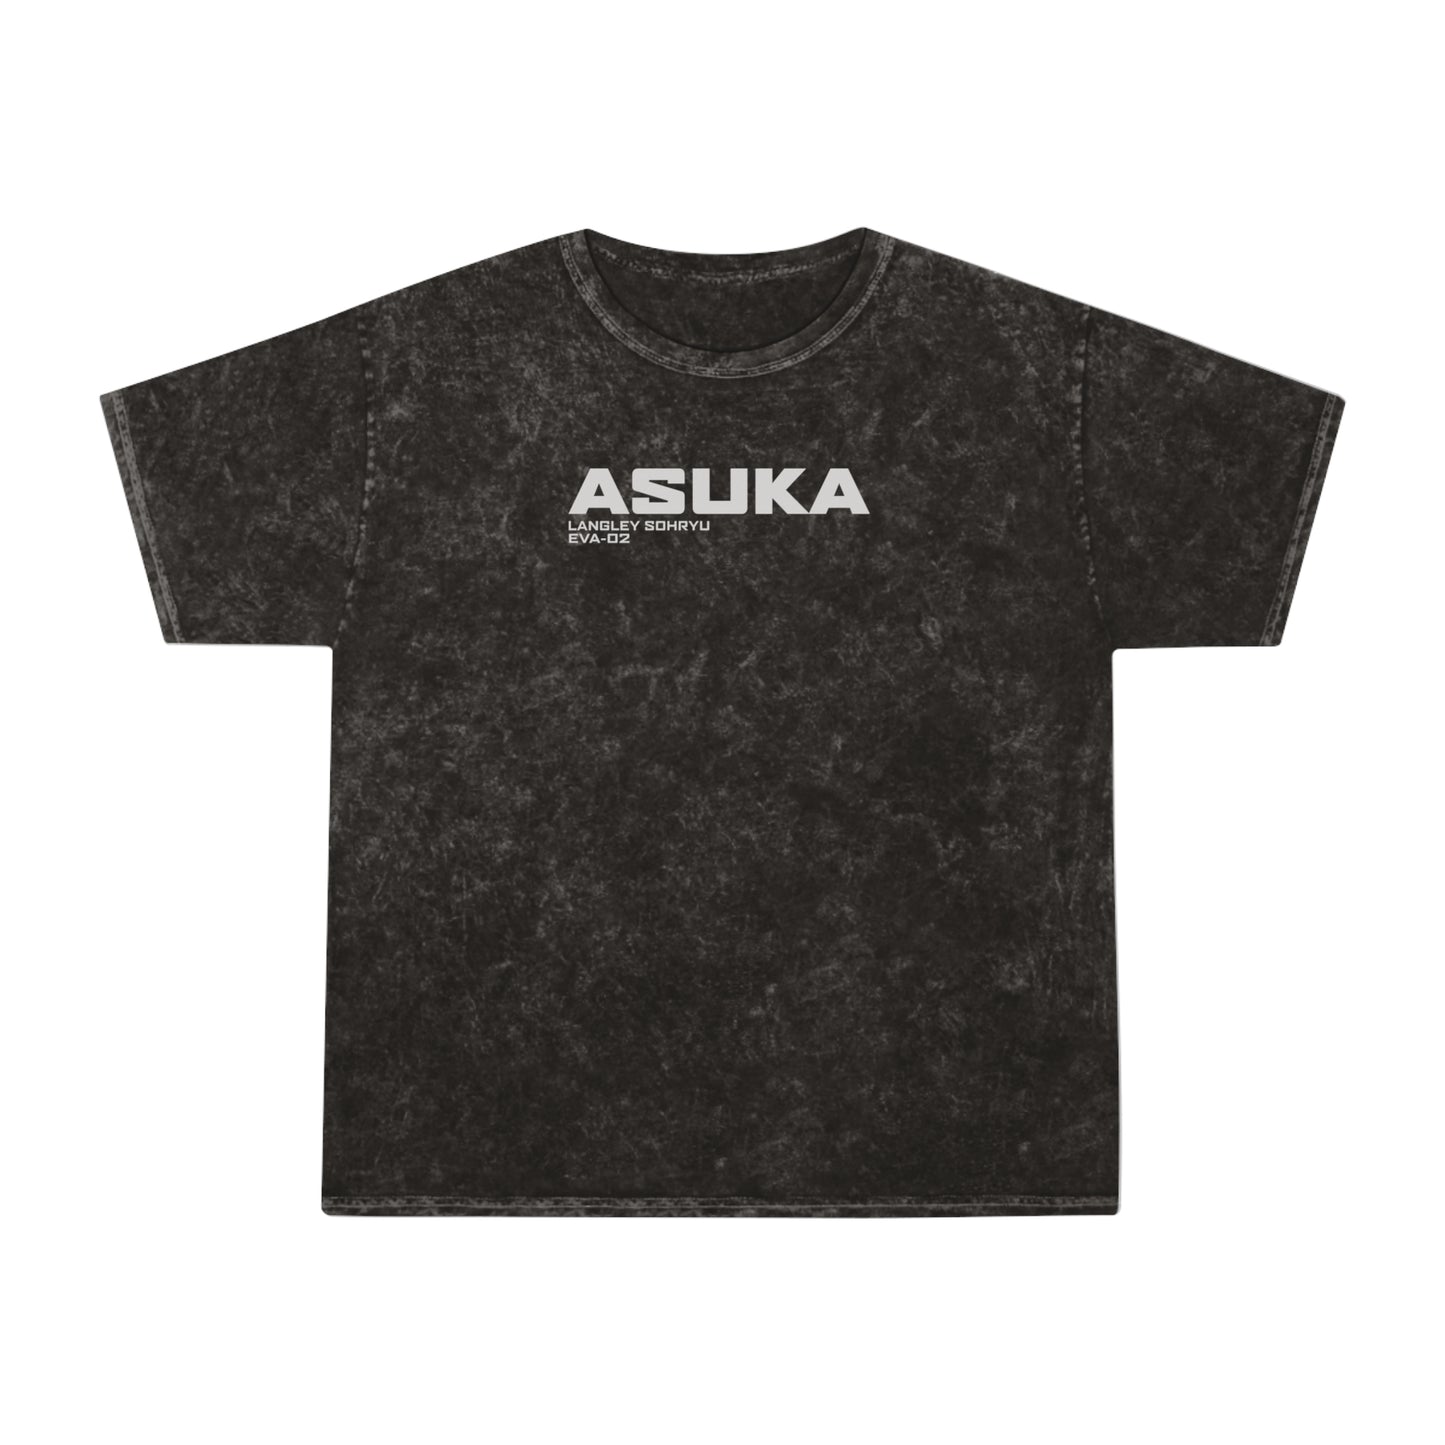 Asuka - Mineral Wash T-Shirt